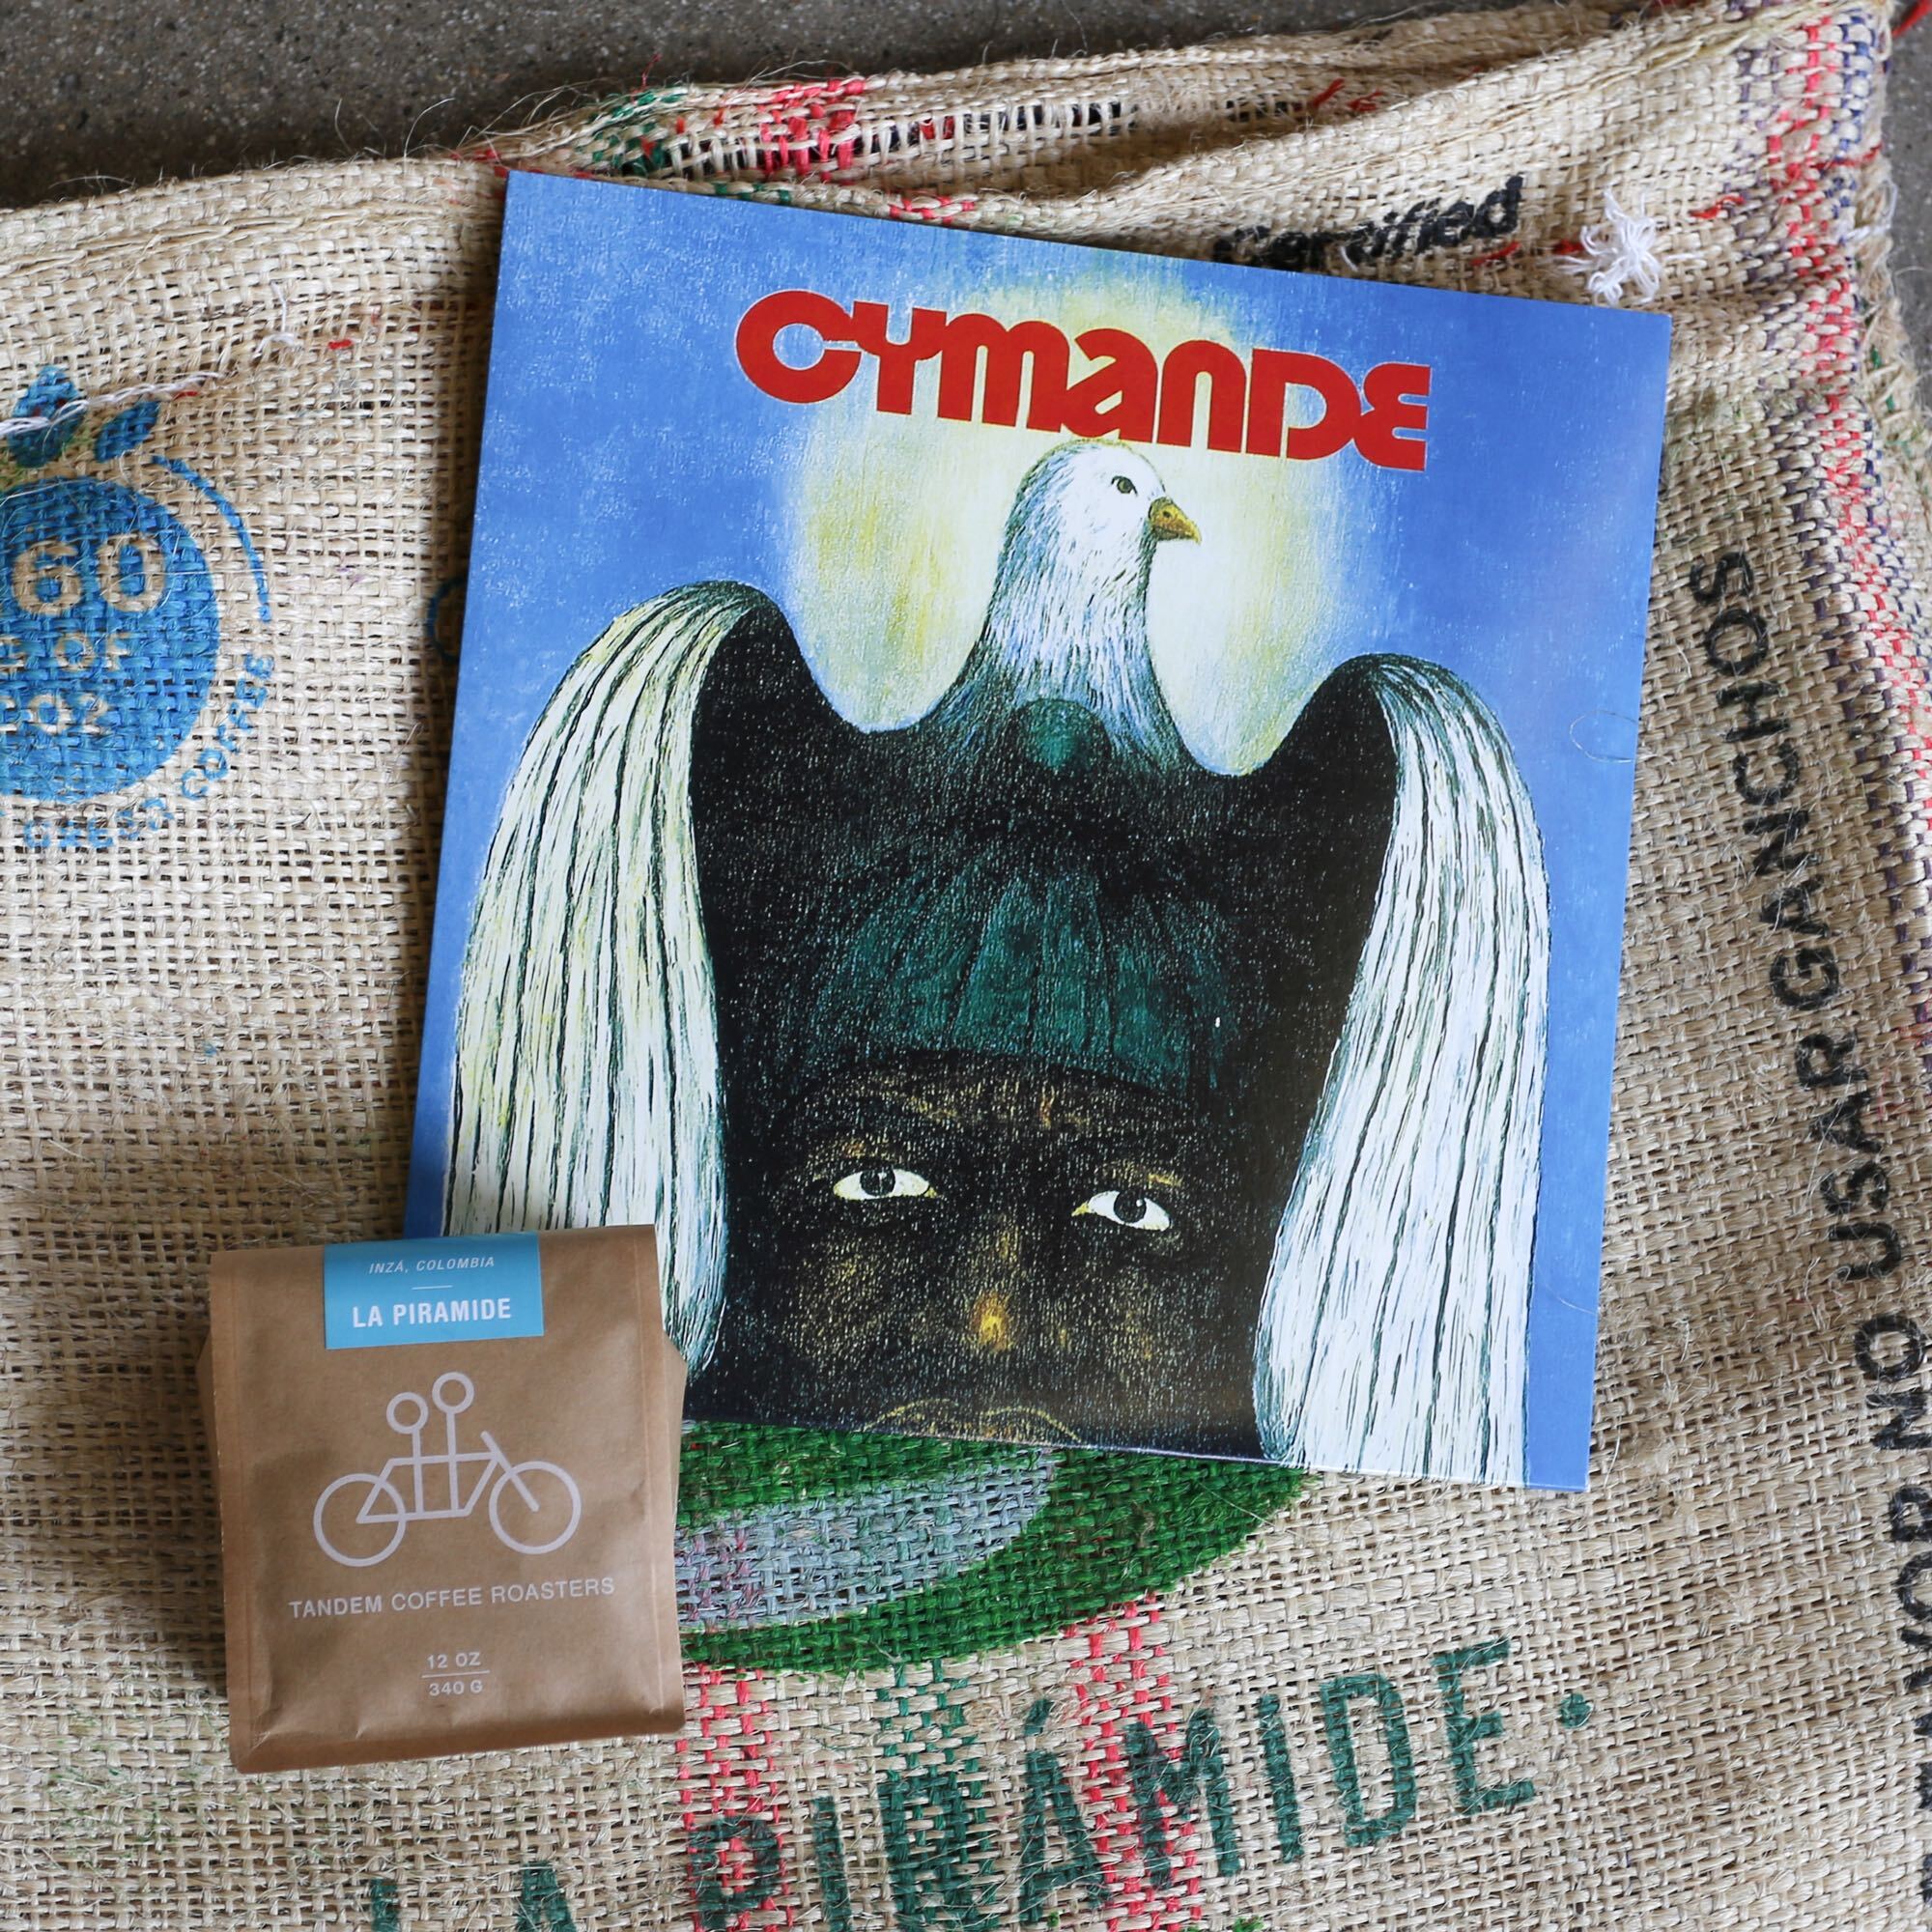 Cymande - Cymande | La Piramide - Inza, Colombia